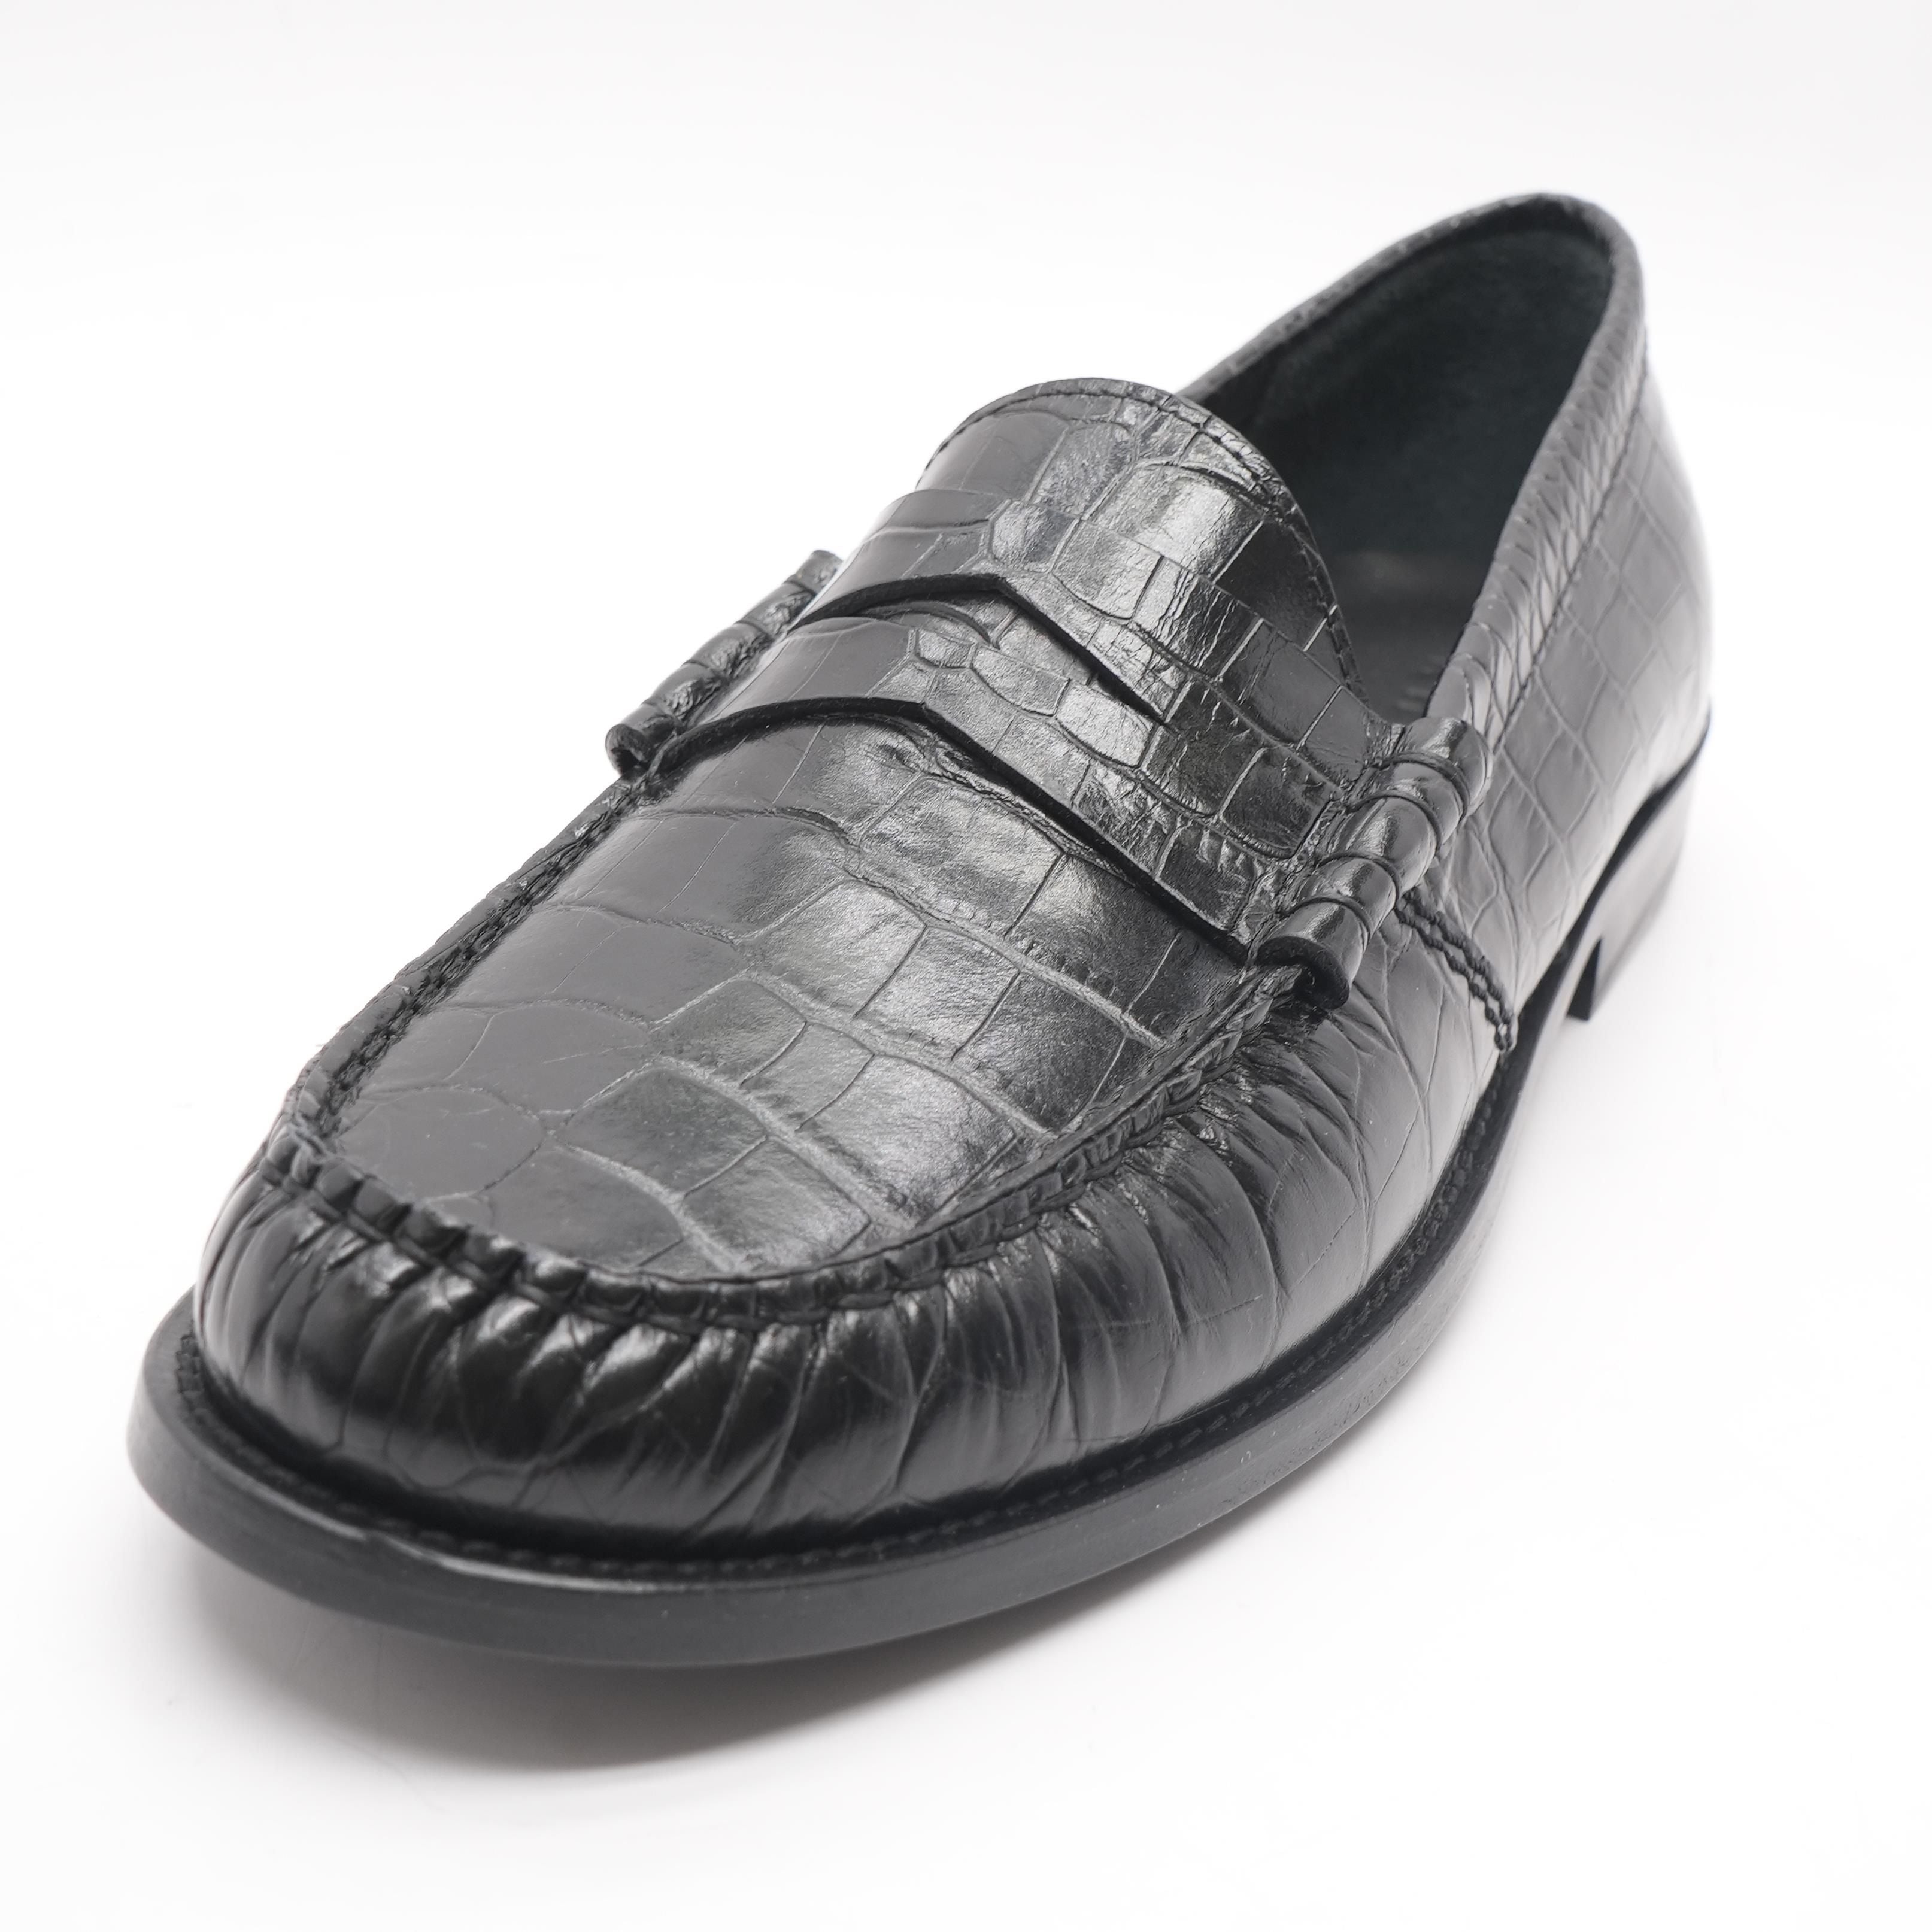 Croc Slip On Black Loafer Shoes